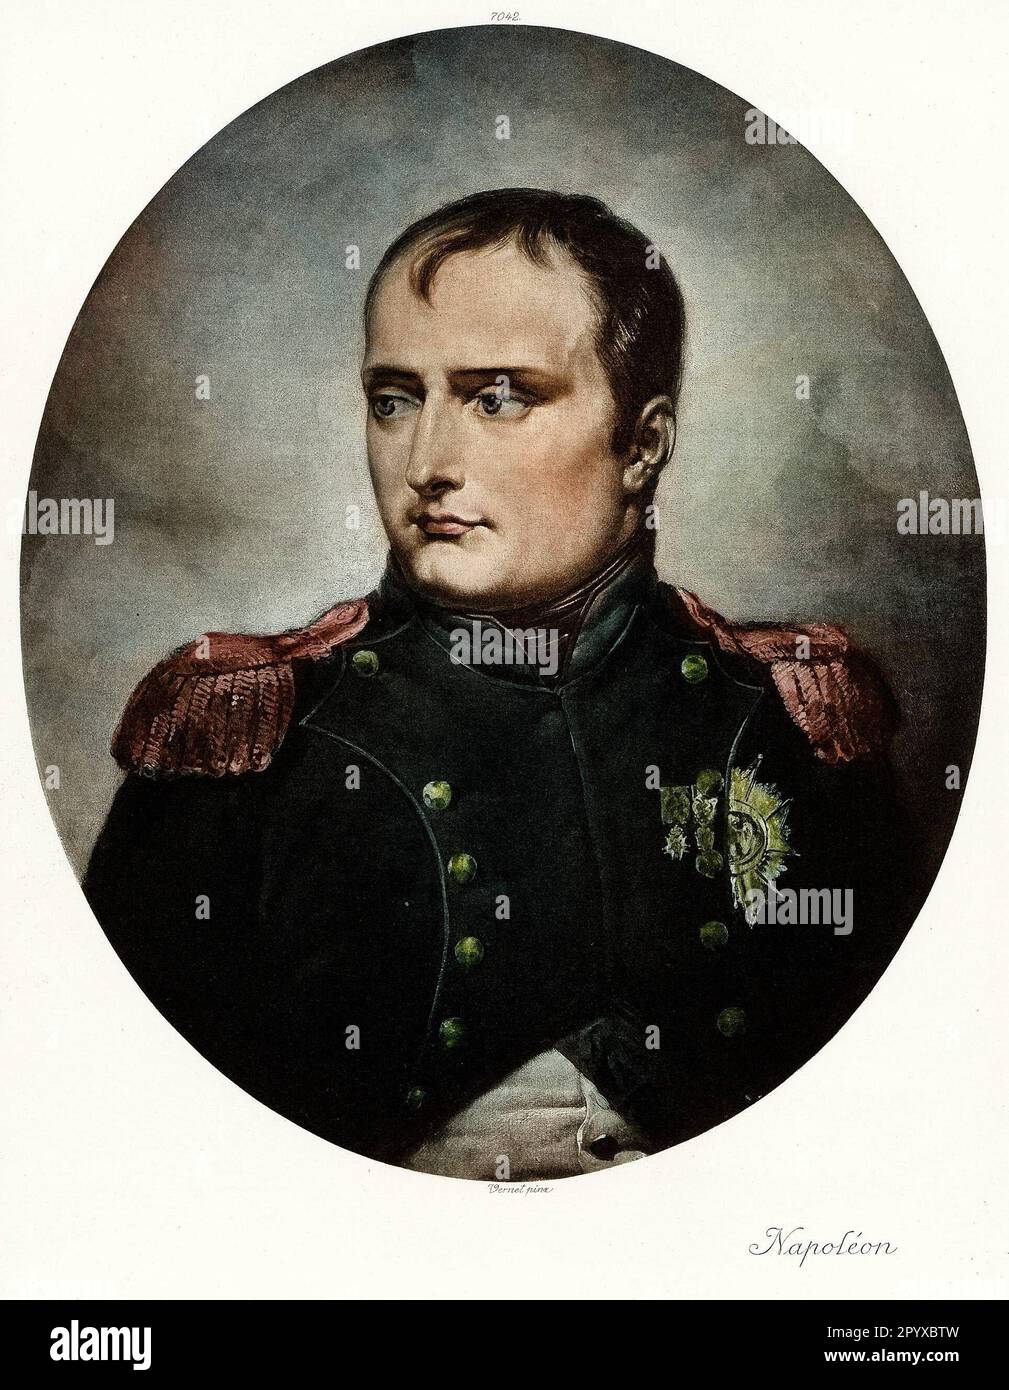 Napoleon I, Kaiser der Franzosen (1804-14/15). Gemälde von Vernet. Foto: Heliogravure, Corpus Imaginum, Hanfstaengl Collection. [Maschinelle Übersetzung] Stockfoto